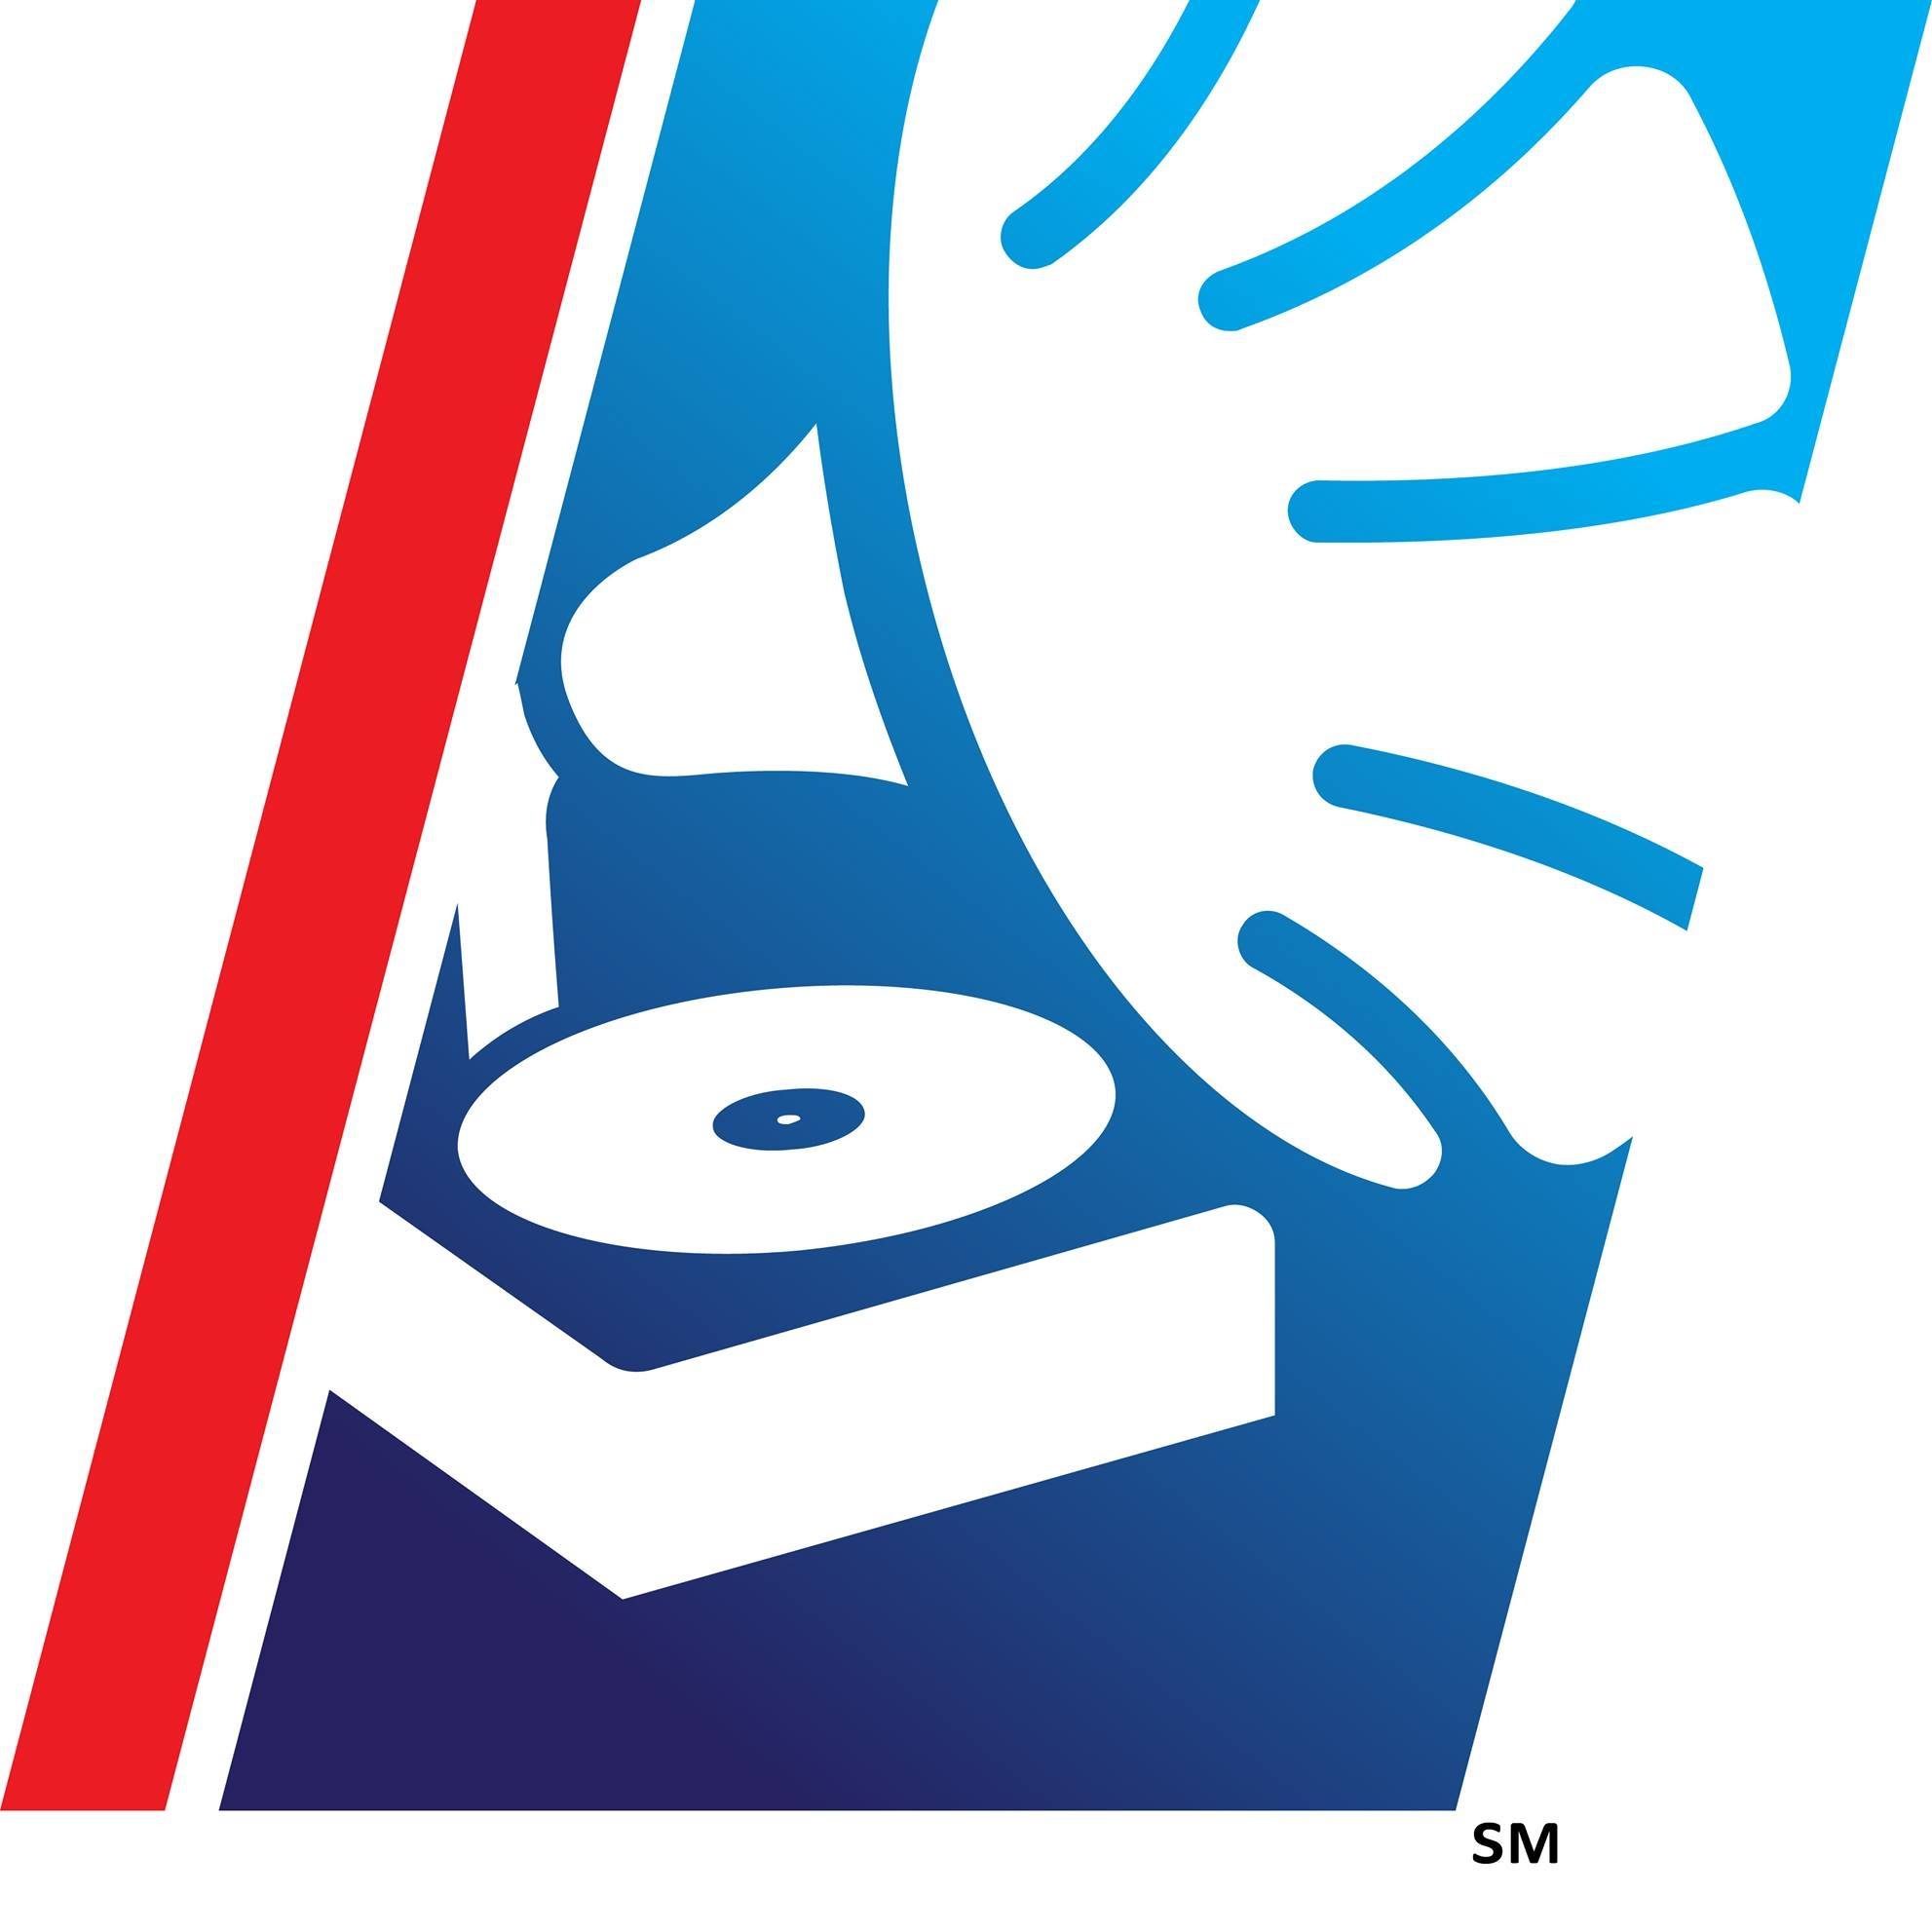 KXRU-LP logo.